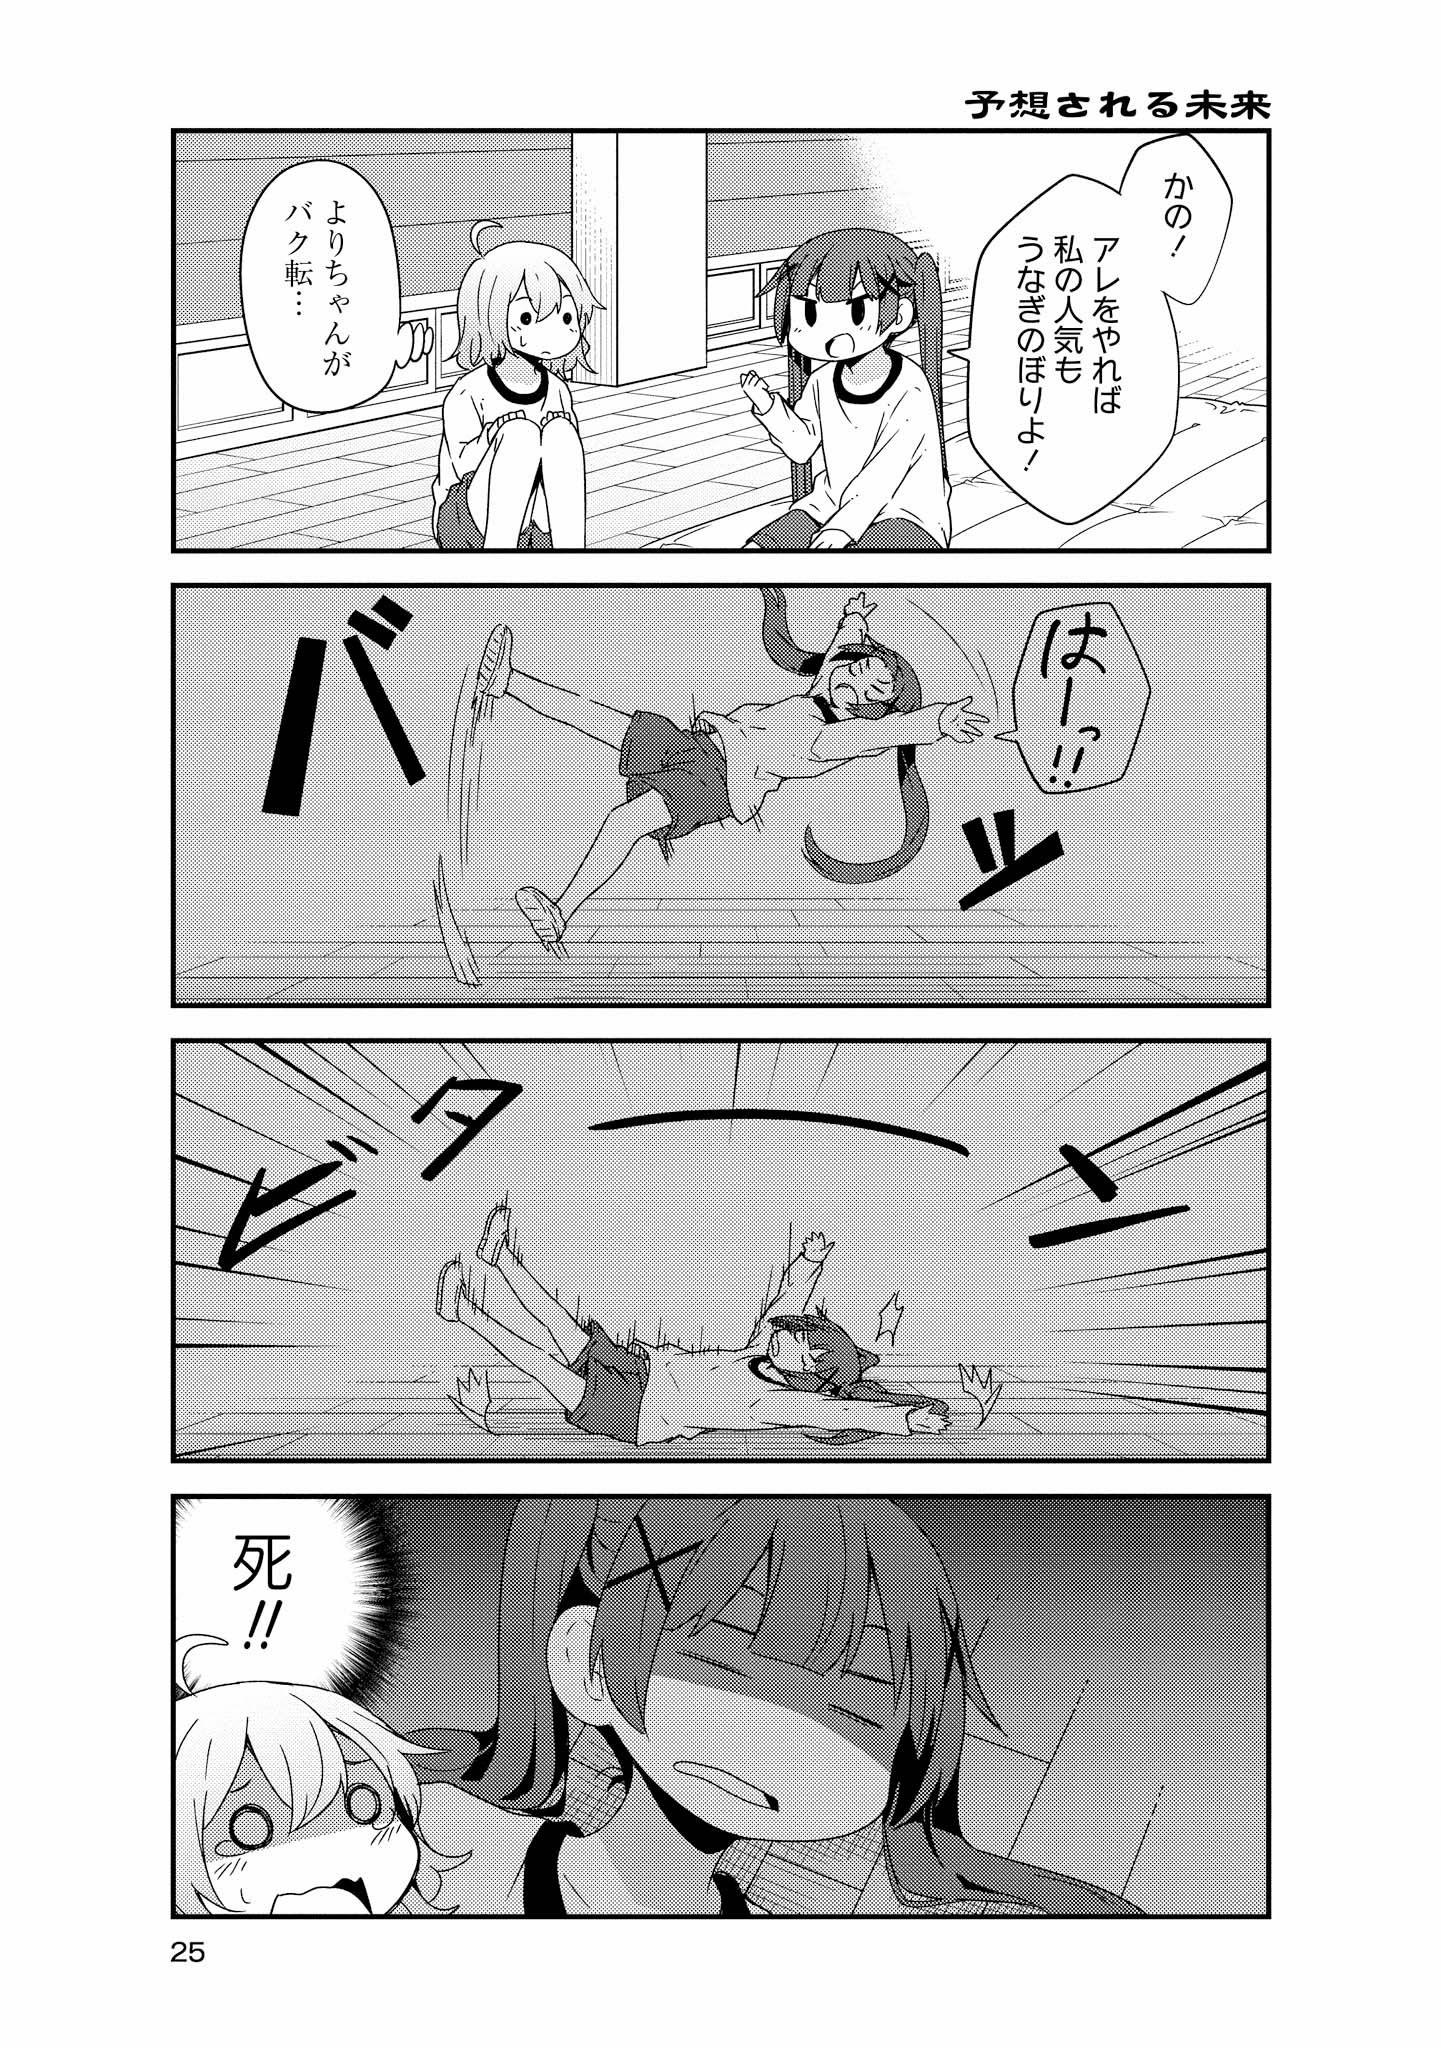 Watashi ni Tenshi ga Maiorita! - Chapter 38 - Page 3